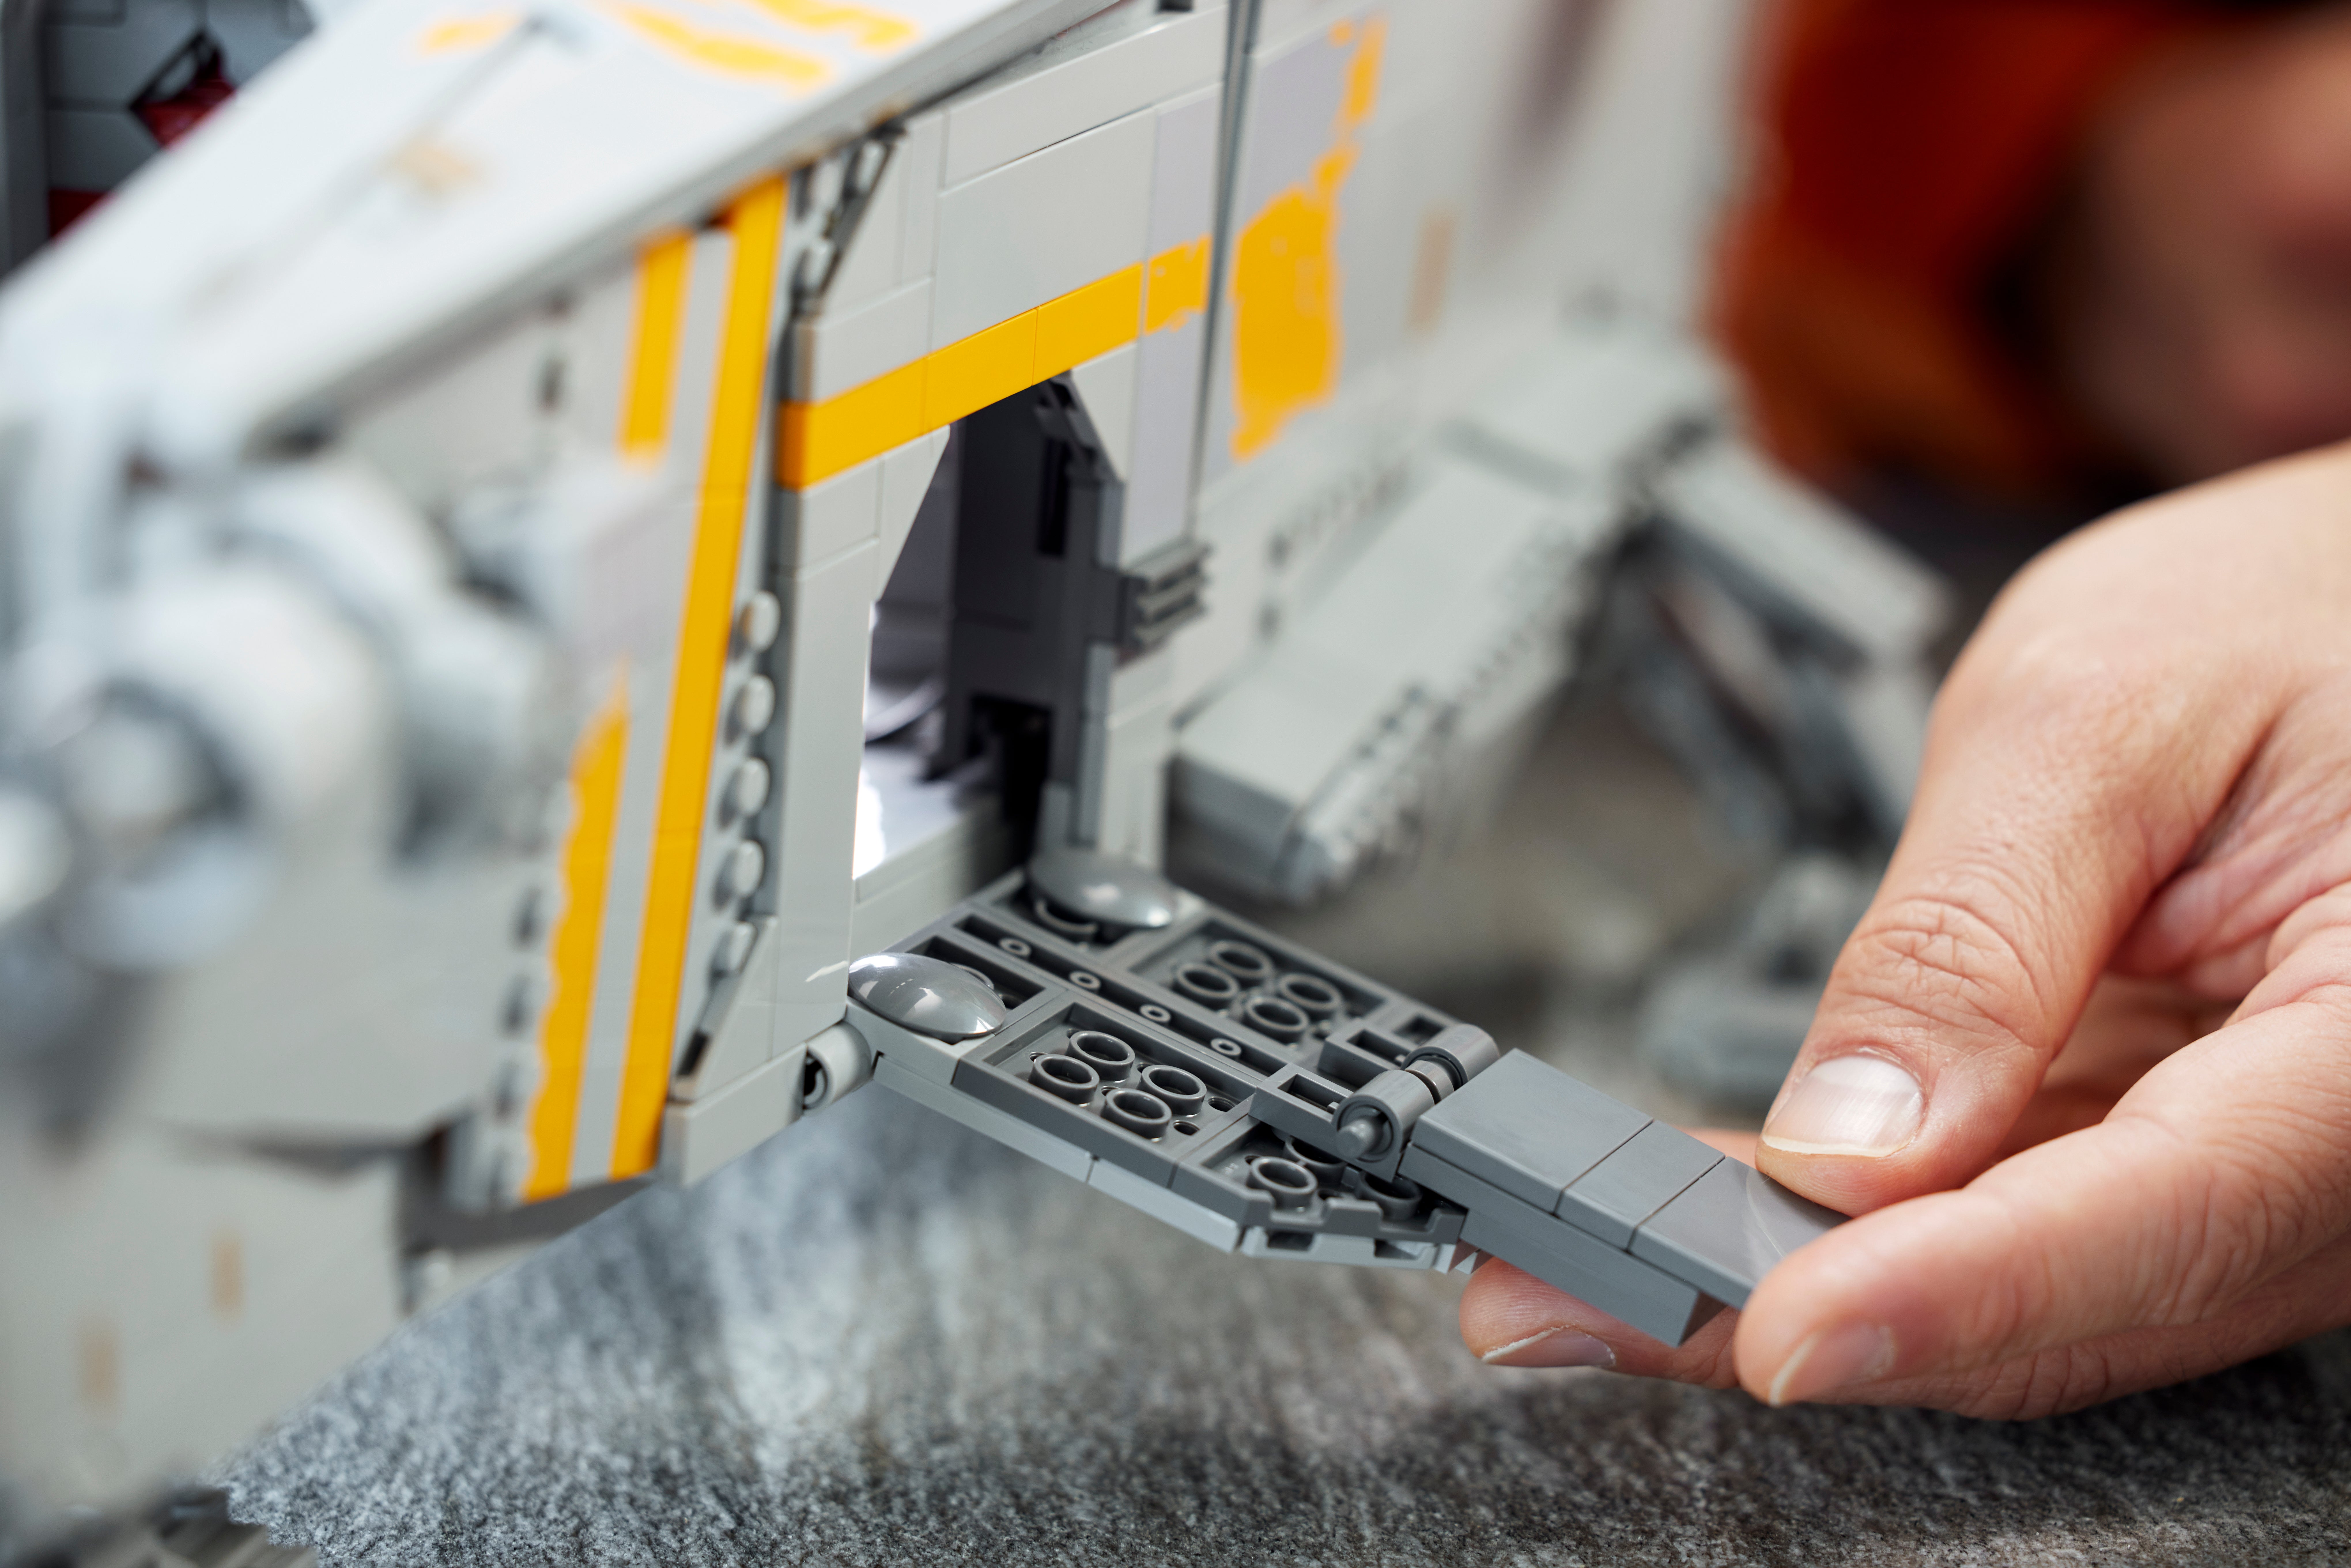 Image: Lego/Lucasfilm